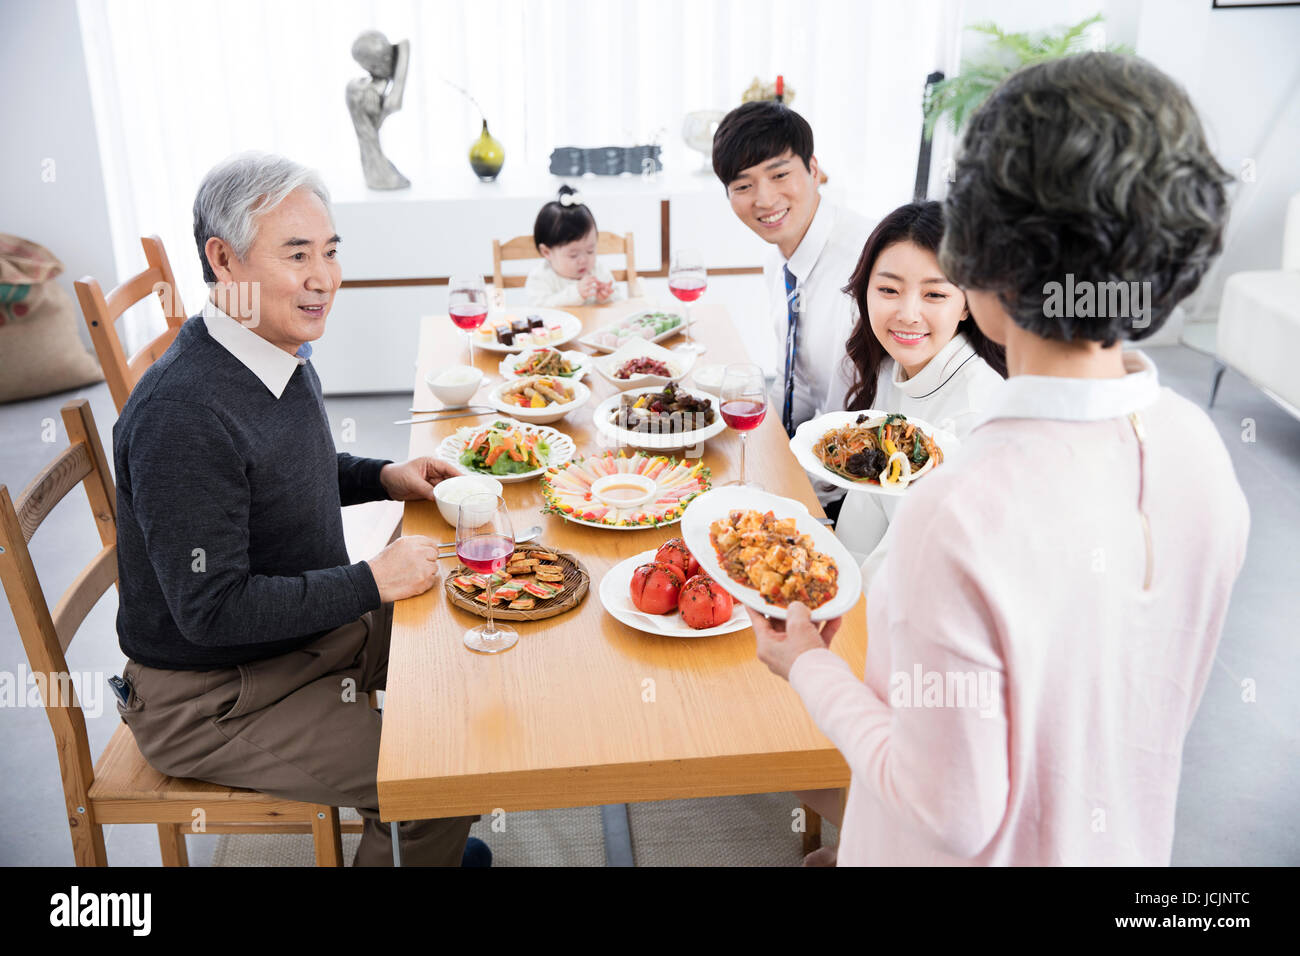 Lifestyle of harmonious family Stock Photo